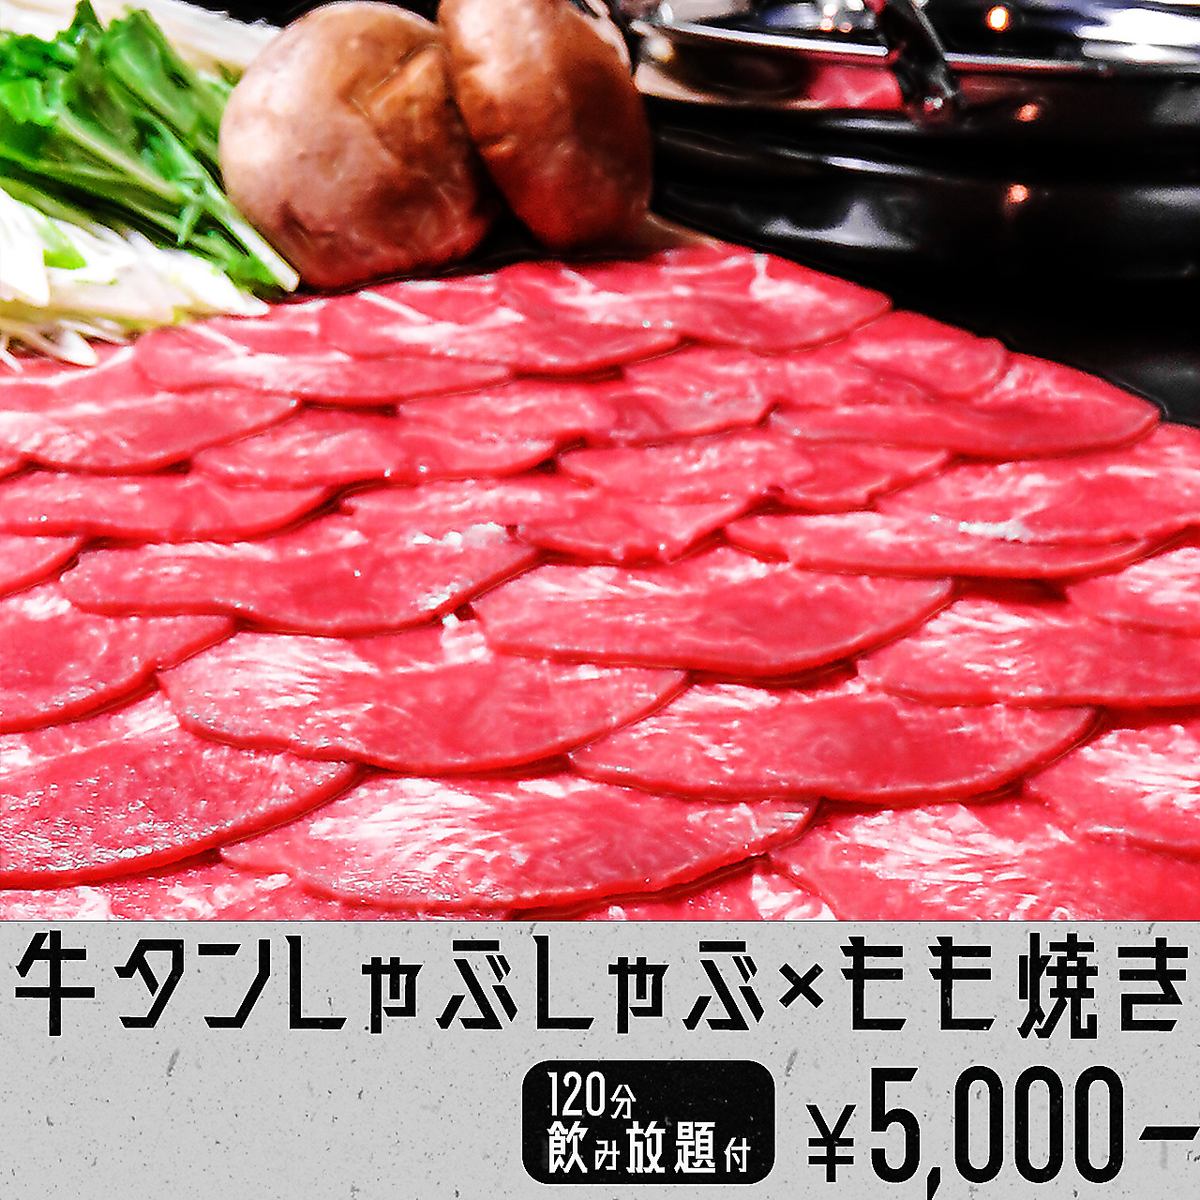 人气很高◎肉店直送!烤大腿+火锅套餐5,000日元～